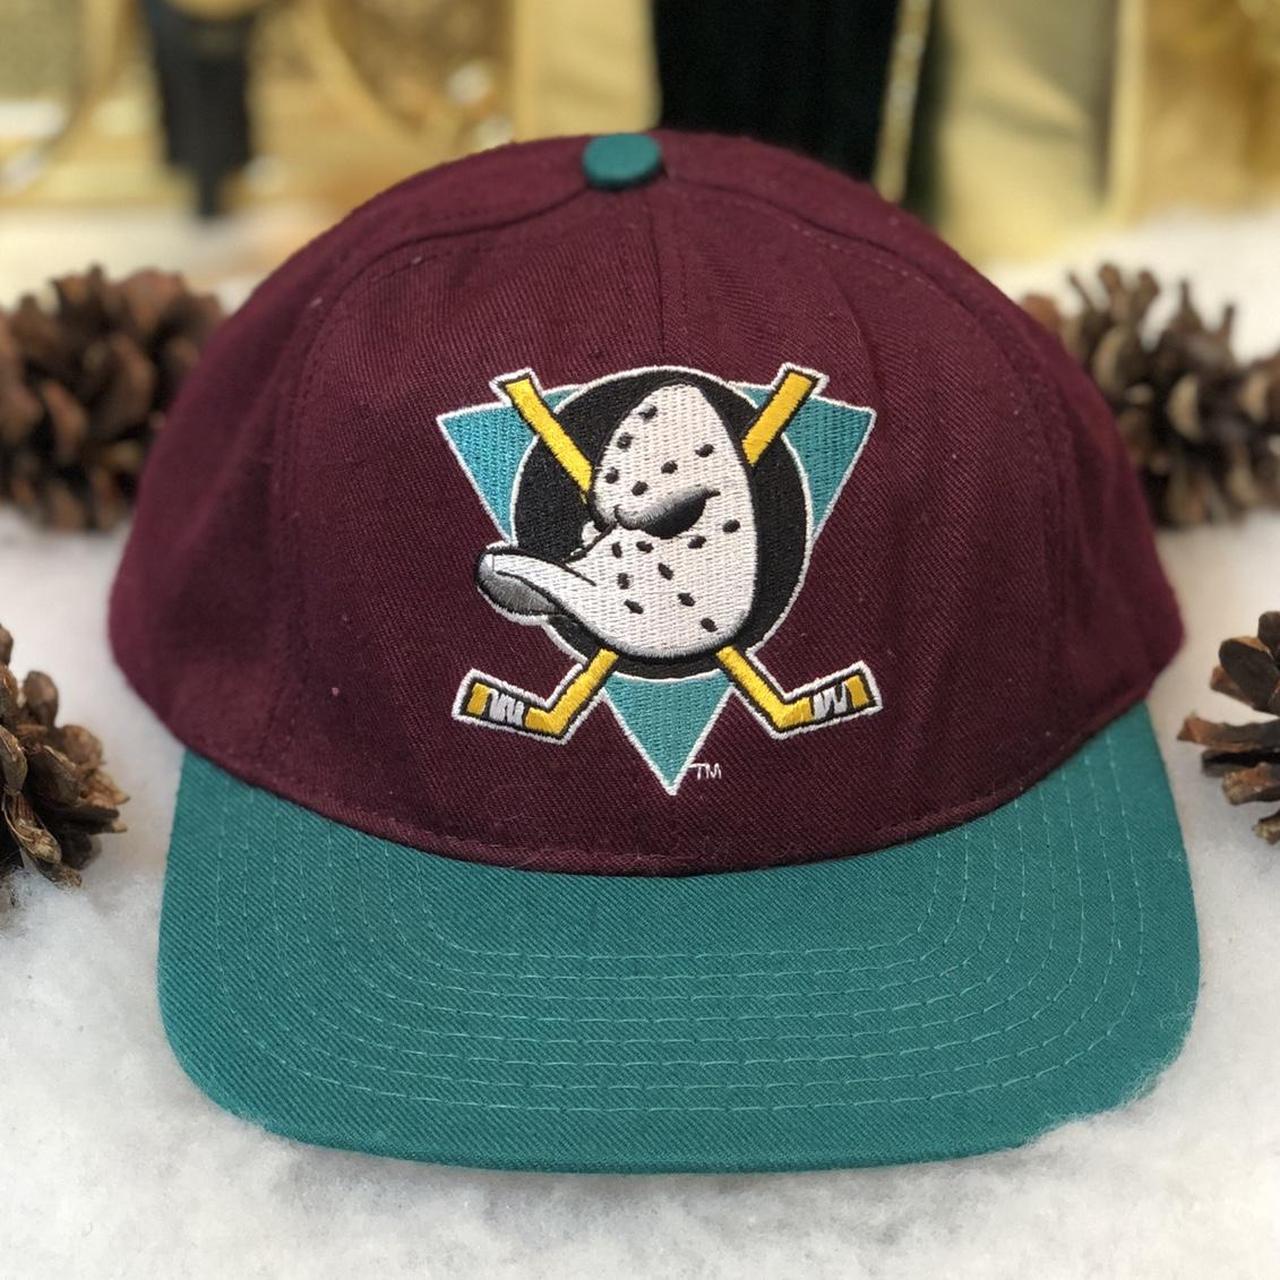 Mighty Ducks Hat 🏒 Vintage NHL Anaheim Mighty Ducks... - Depop